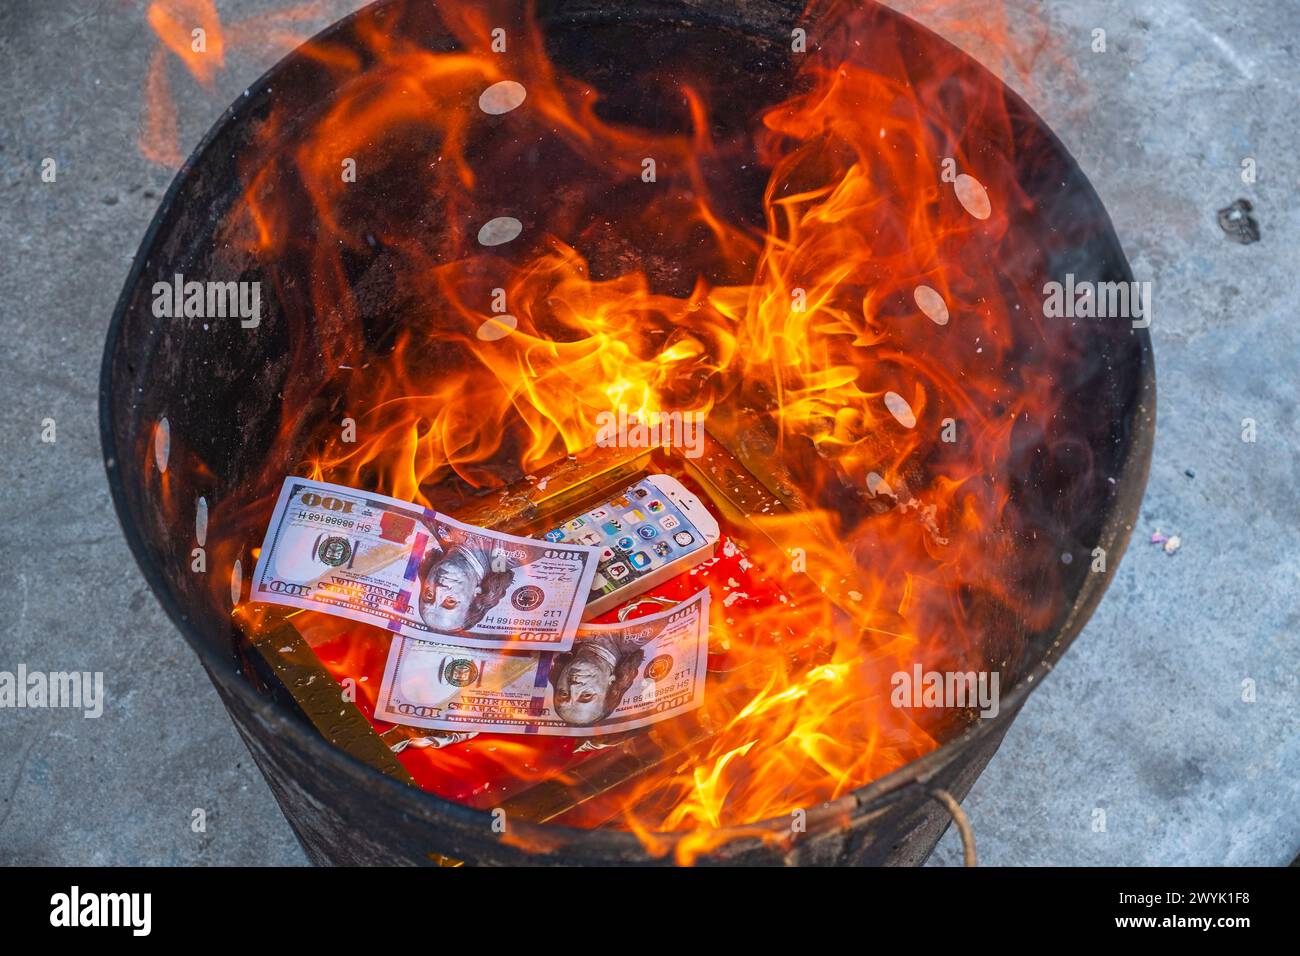 Cambodge, province de Kampot, Kampot, festival du Têt ou nouvel an chinois, tradition de brûler de faux billets de banque comme offrande aux ancêtres décédés Banque D'Images